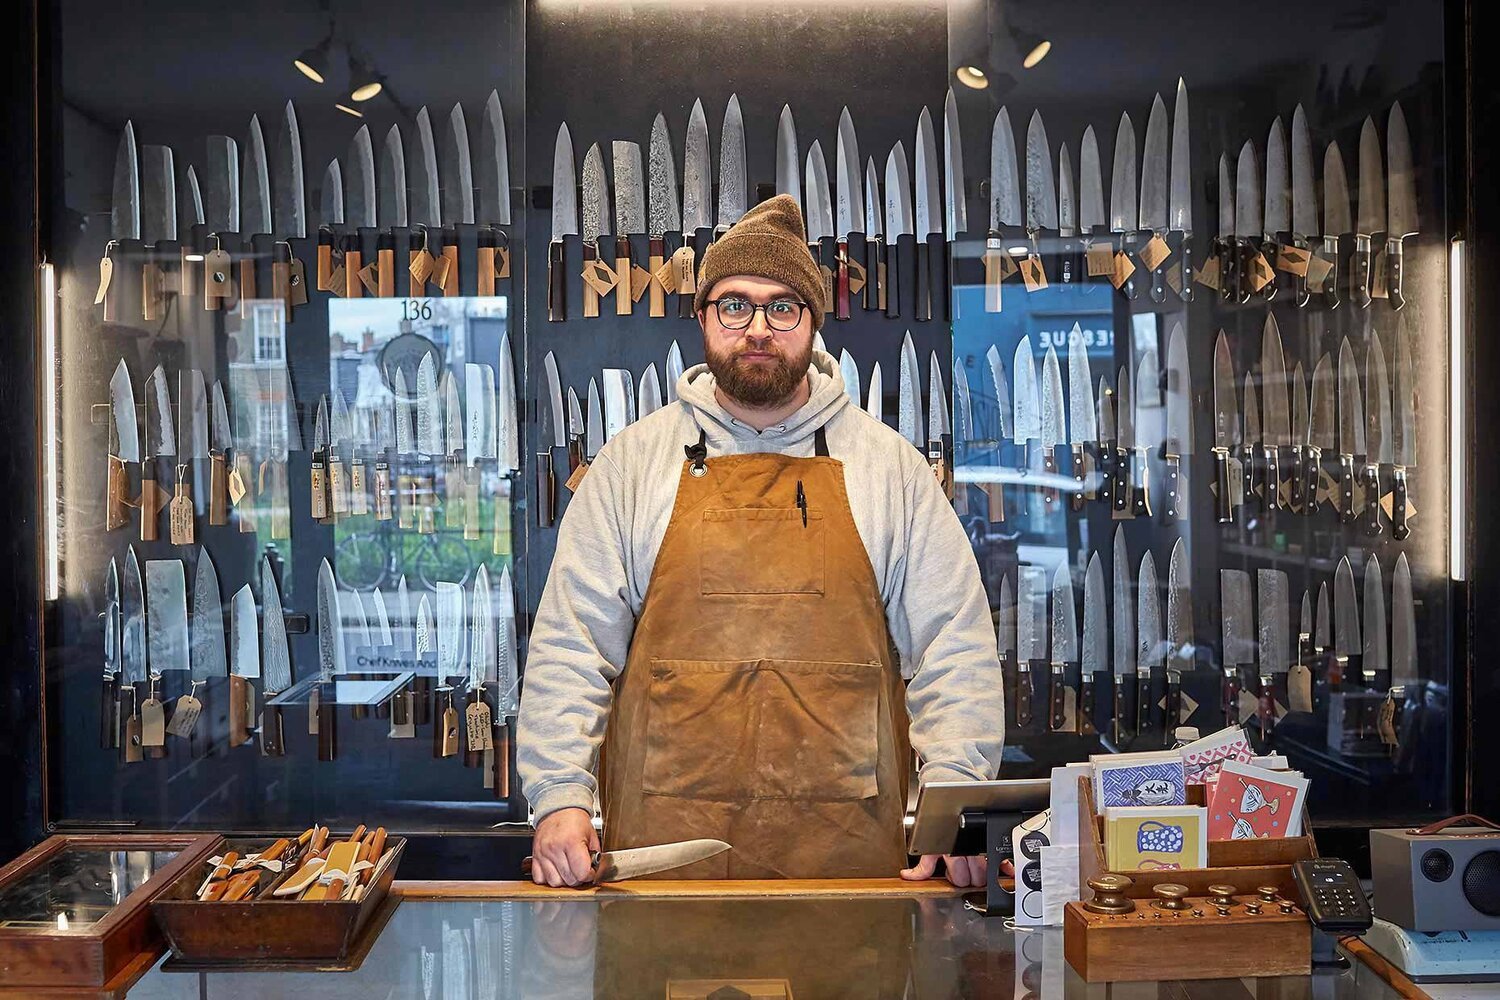 knife-shop-owner.jpg